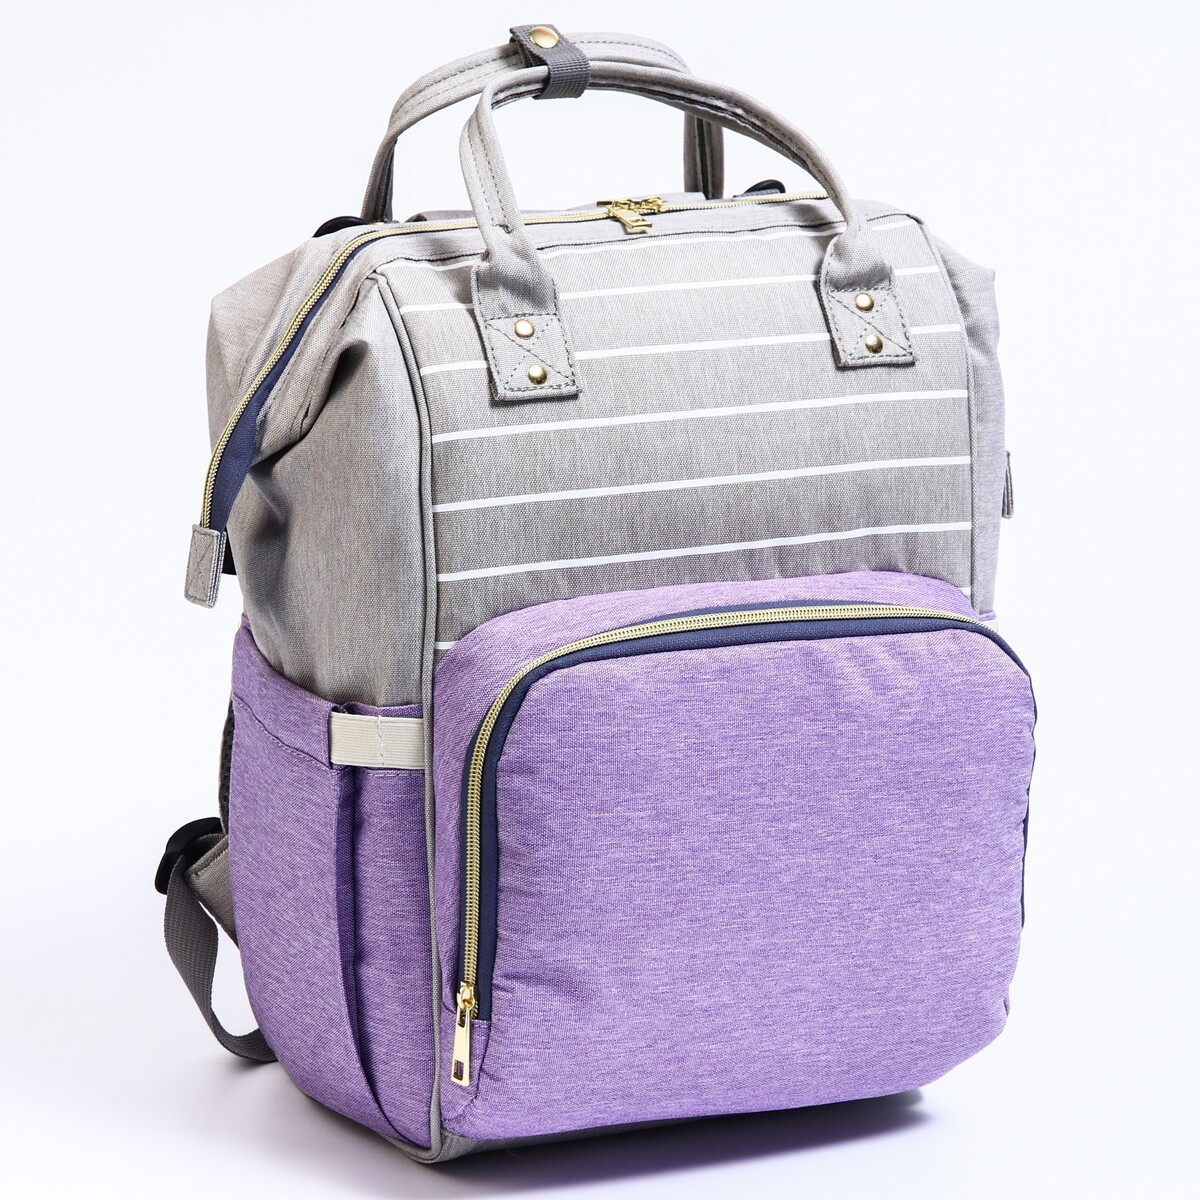 Рюкзак женский с термокарманом, термосумка - портфель, цвет серый/фиолетовый пылесос вертикальный jimmy h8pro беспроводной фиолетовый серый